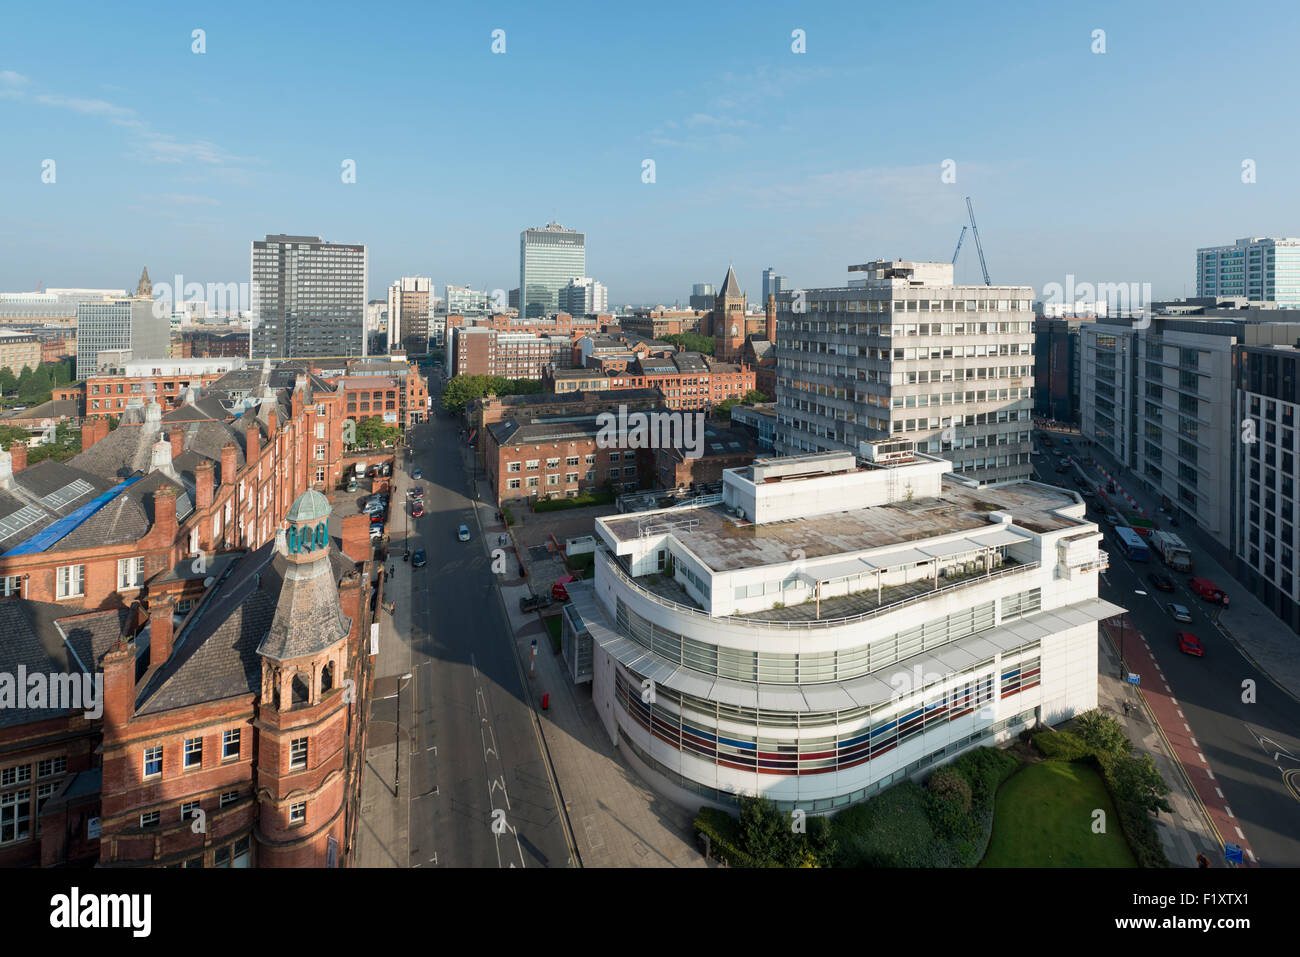 Une photo de la ville de Manchester, au Royaume-Uni, avec divers grands bâtiments et gratte-ciel. Banque D'Images